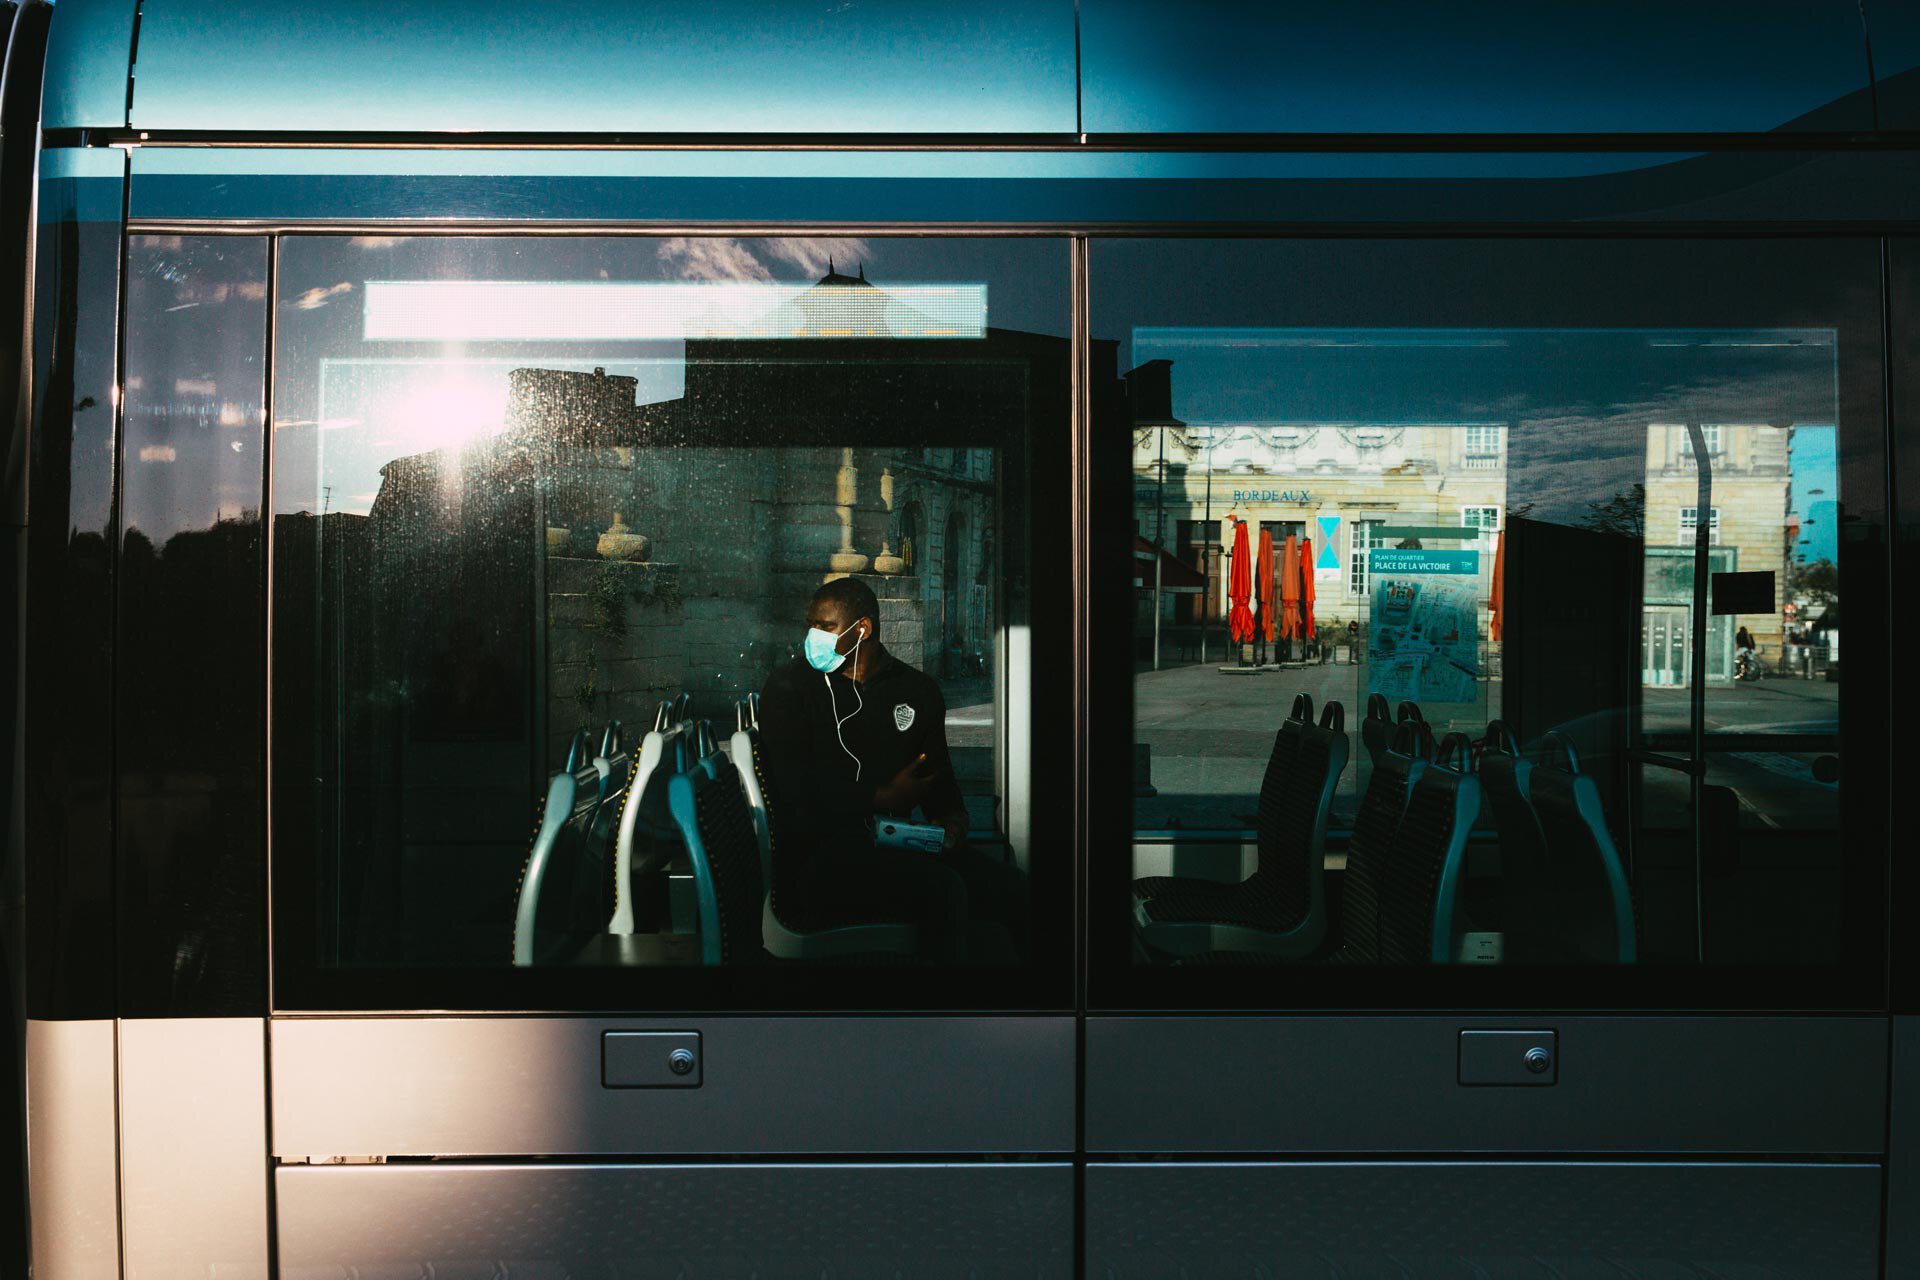 Un homme seul dans le tram.